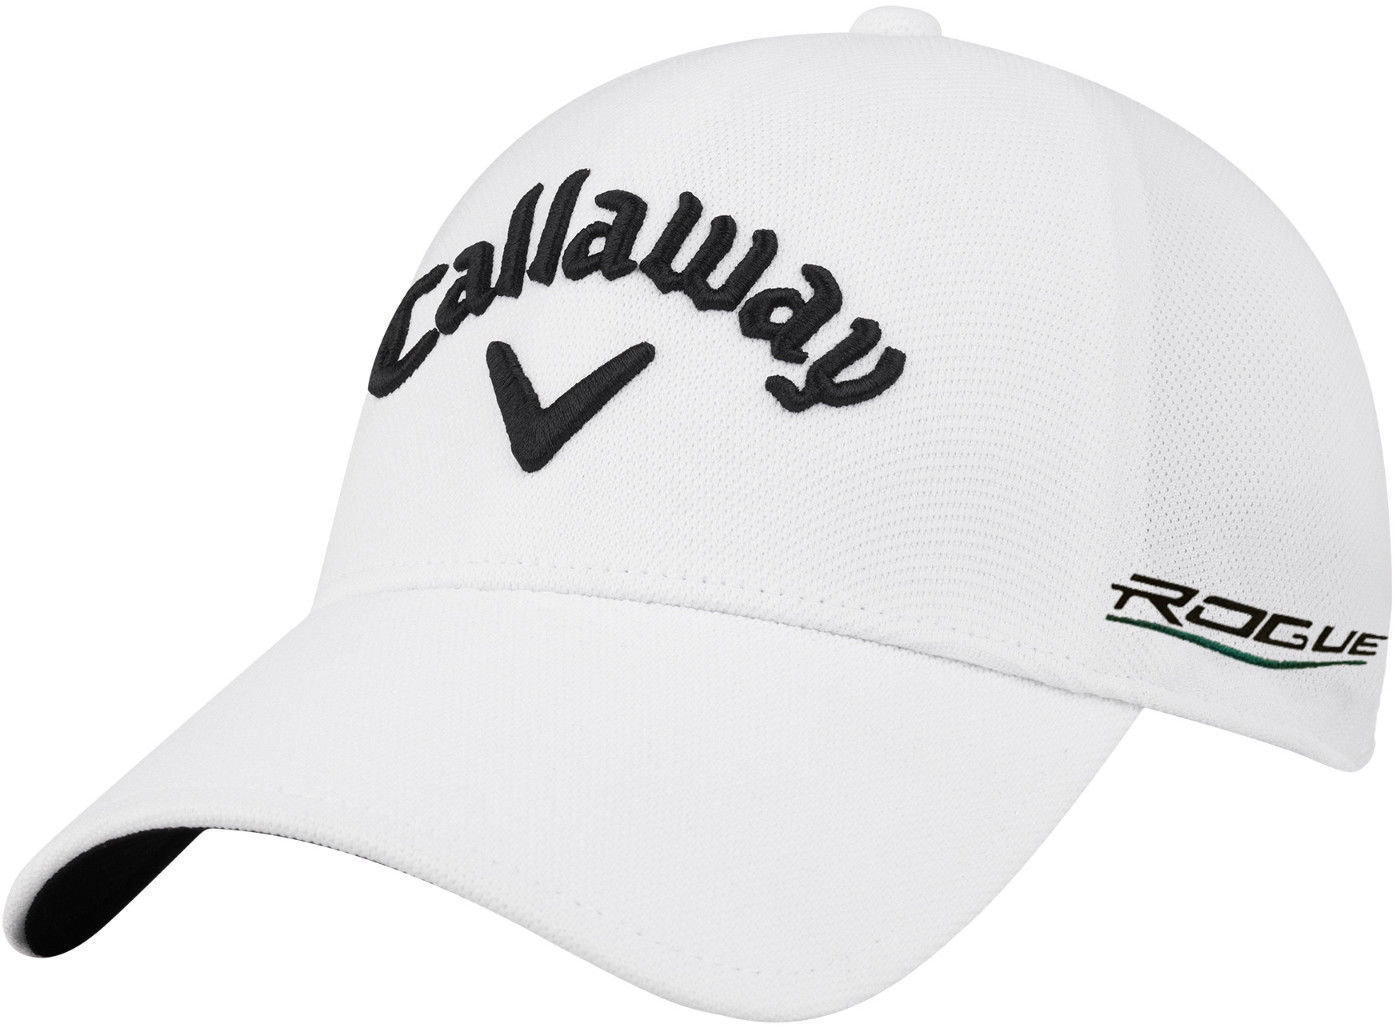 Καπέλο Callaway Ta Seamless Fitted L/Xl White 18